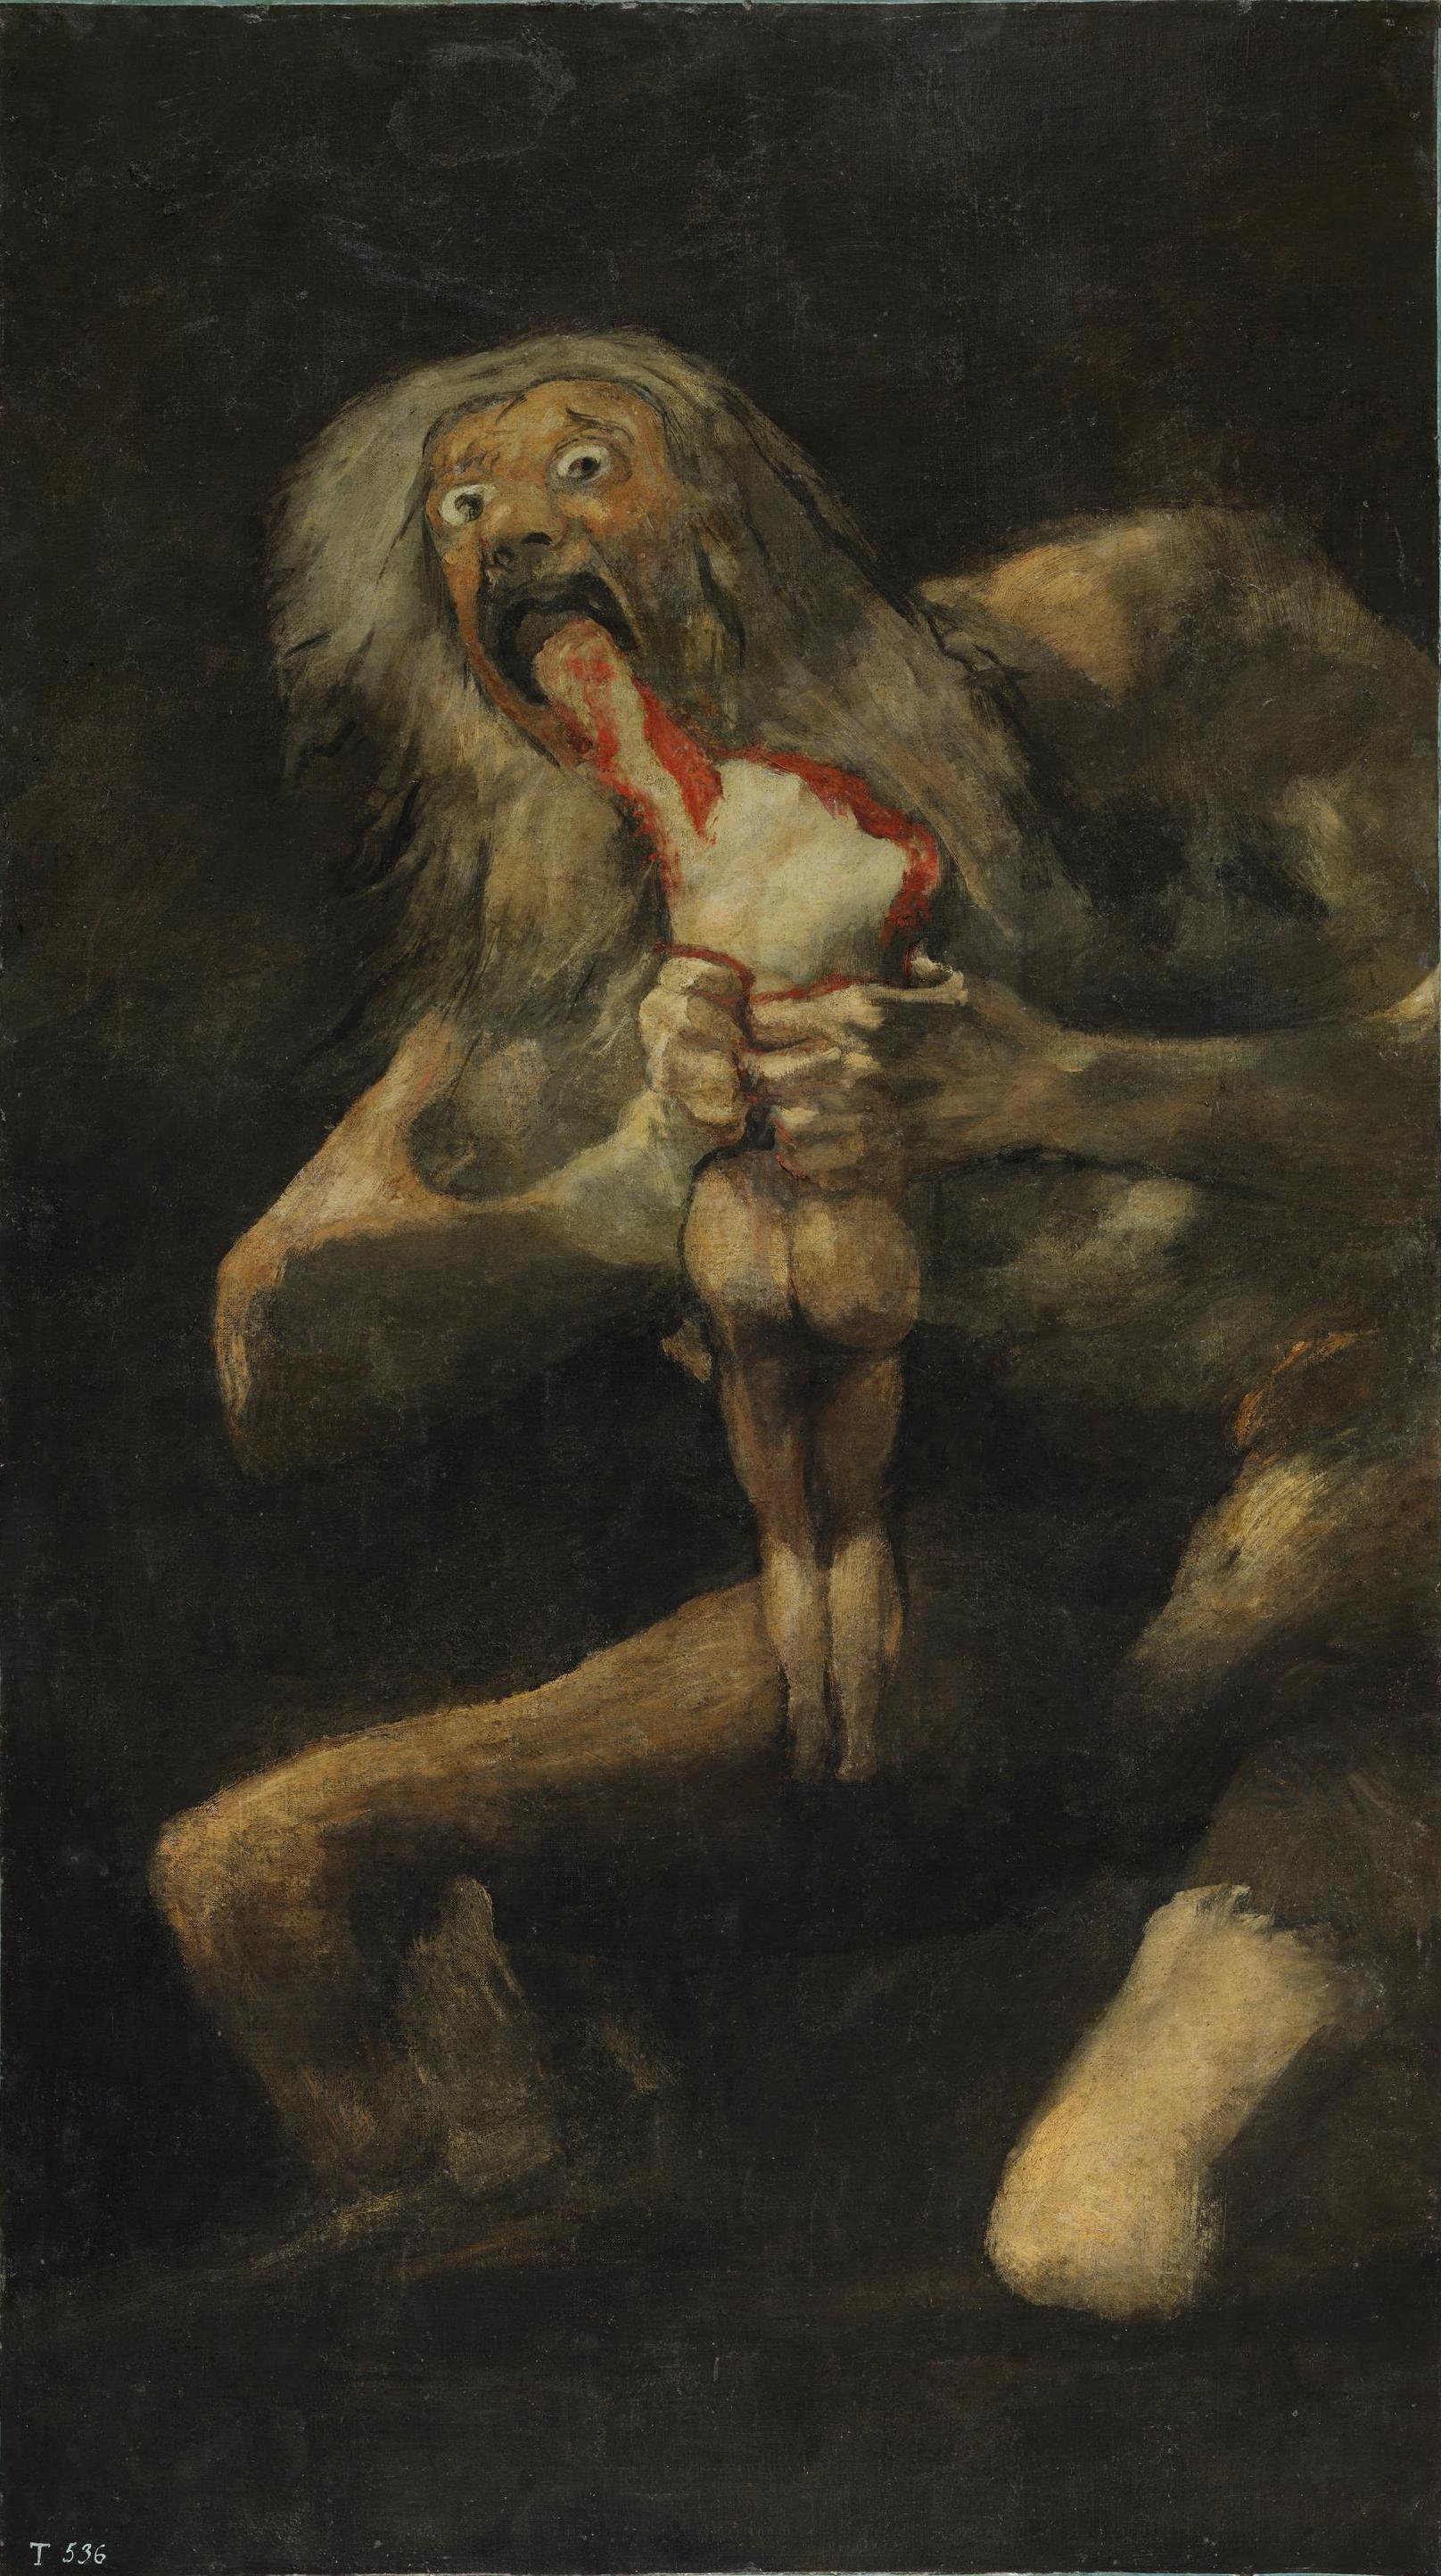 Francisco de Goya, Saturno devorando seu filho, 1819-1823